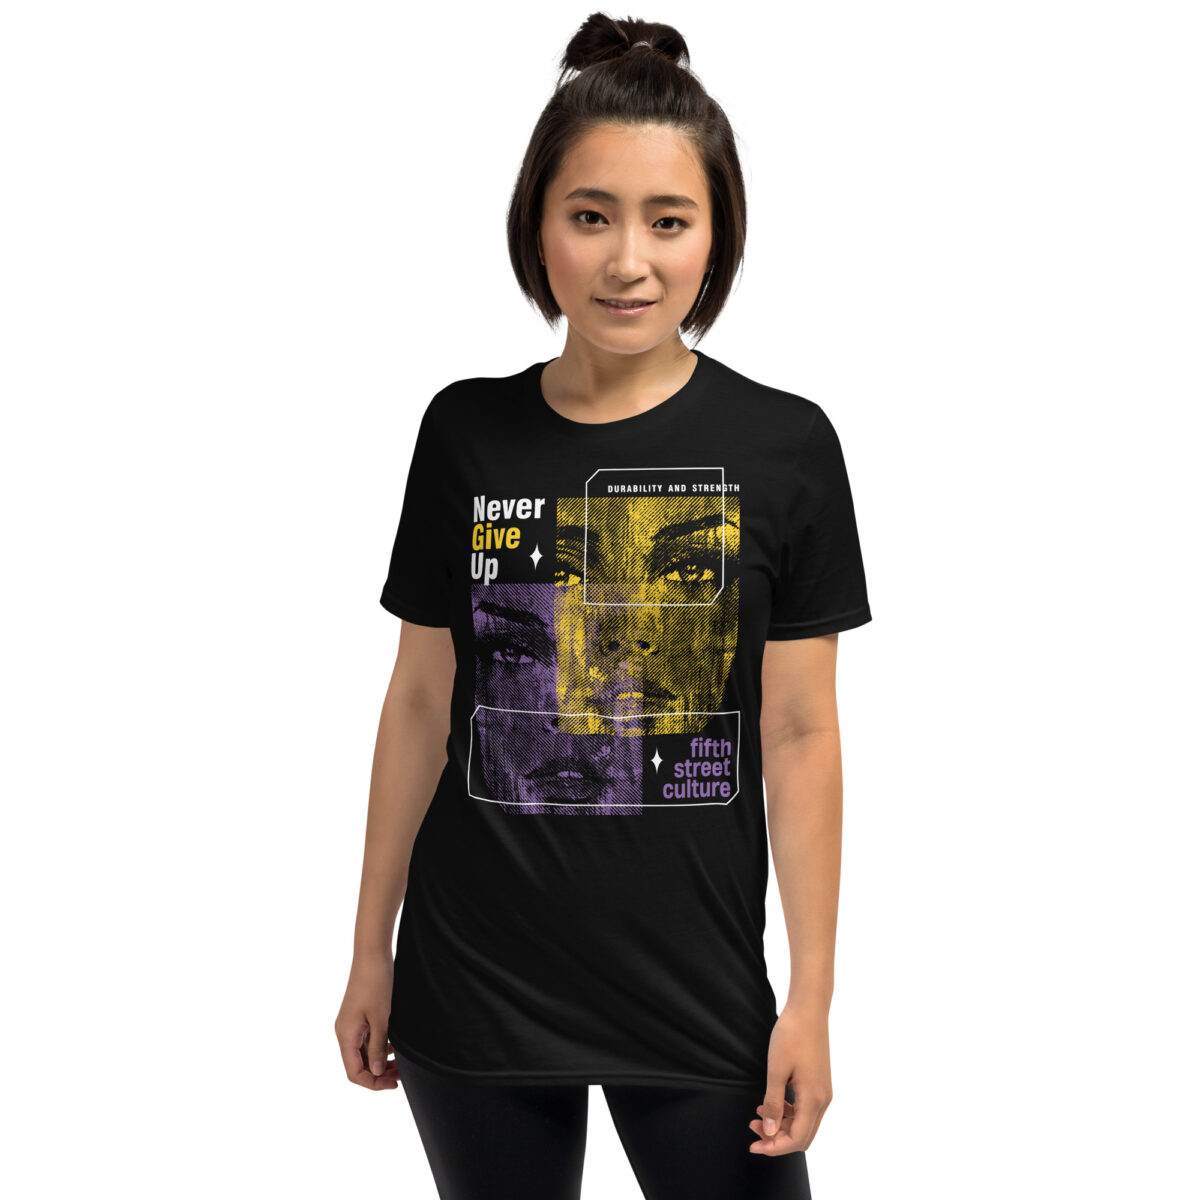 5th Street Culture ladies poker t-shirt mockup